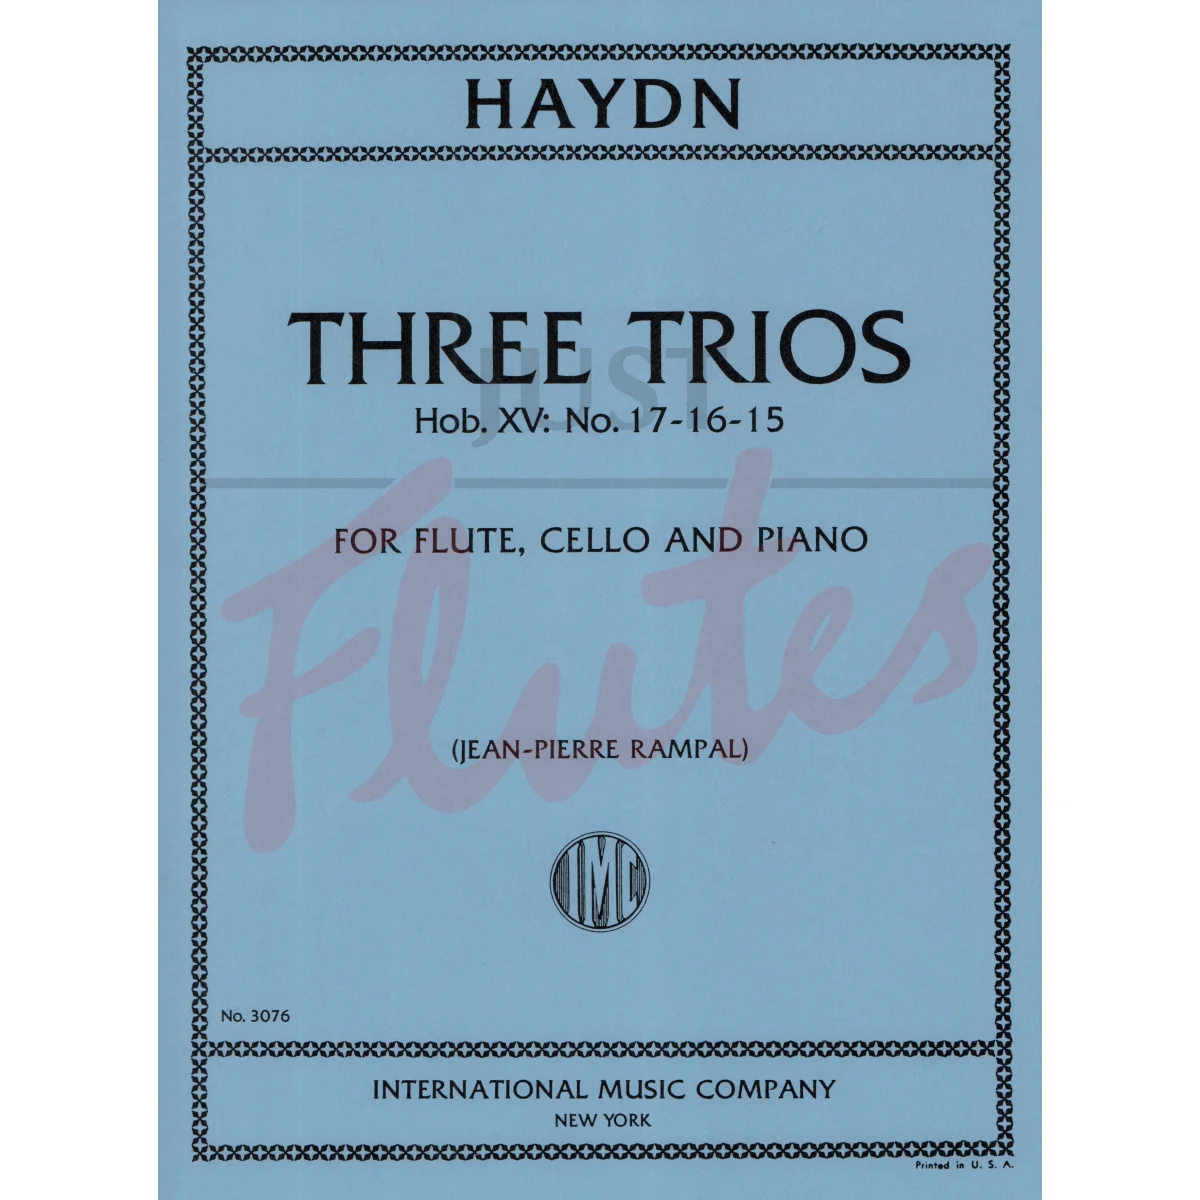 Three Trios for Flute, Cello and Piano